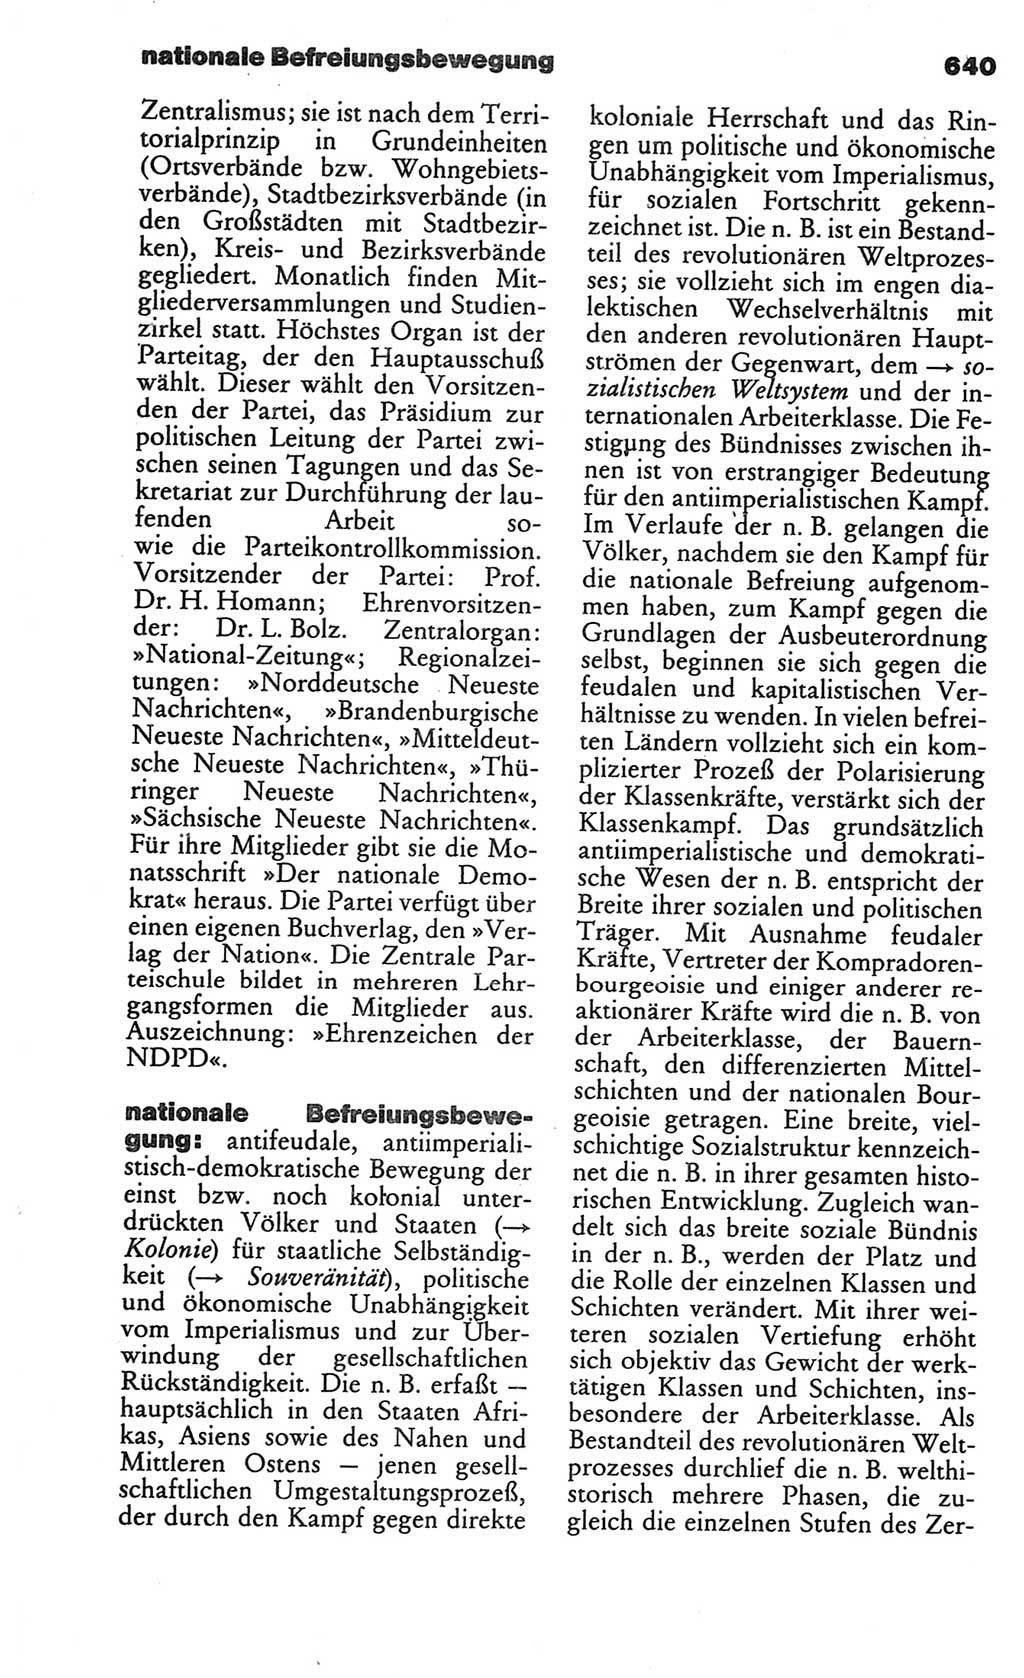 Kleines politisches Wörterbuch [Deutsche Demokratische Republik (DDR)] 1986, Seite 640 (Kl. pol. Wb. DDR 1986, S. 640)